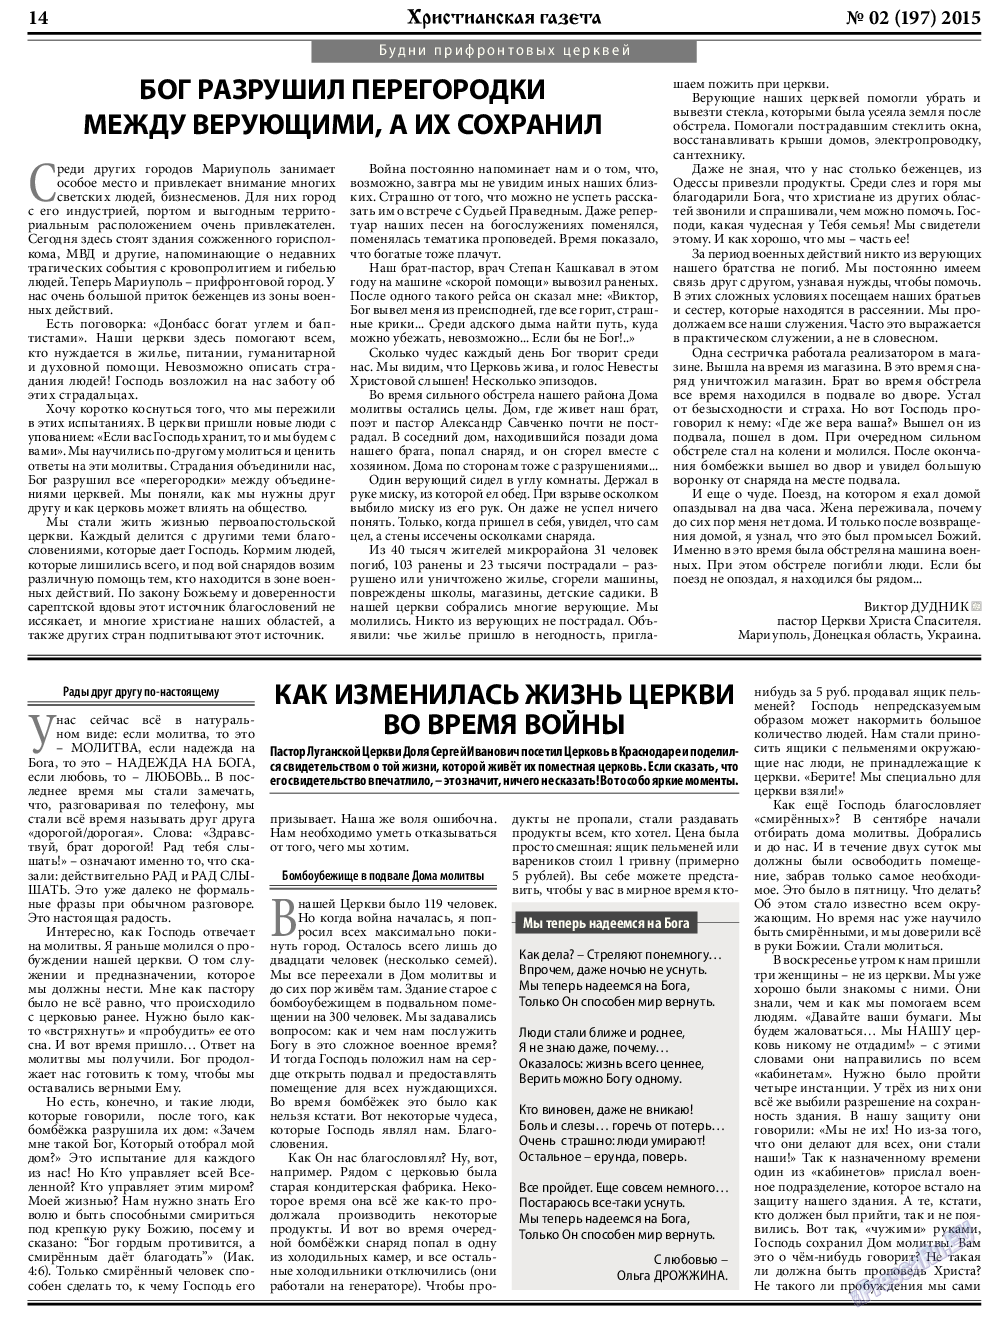 Христианская газета, газета. 2015 №2 стр.22